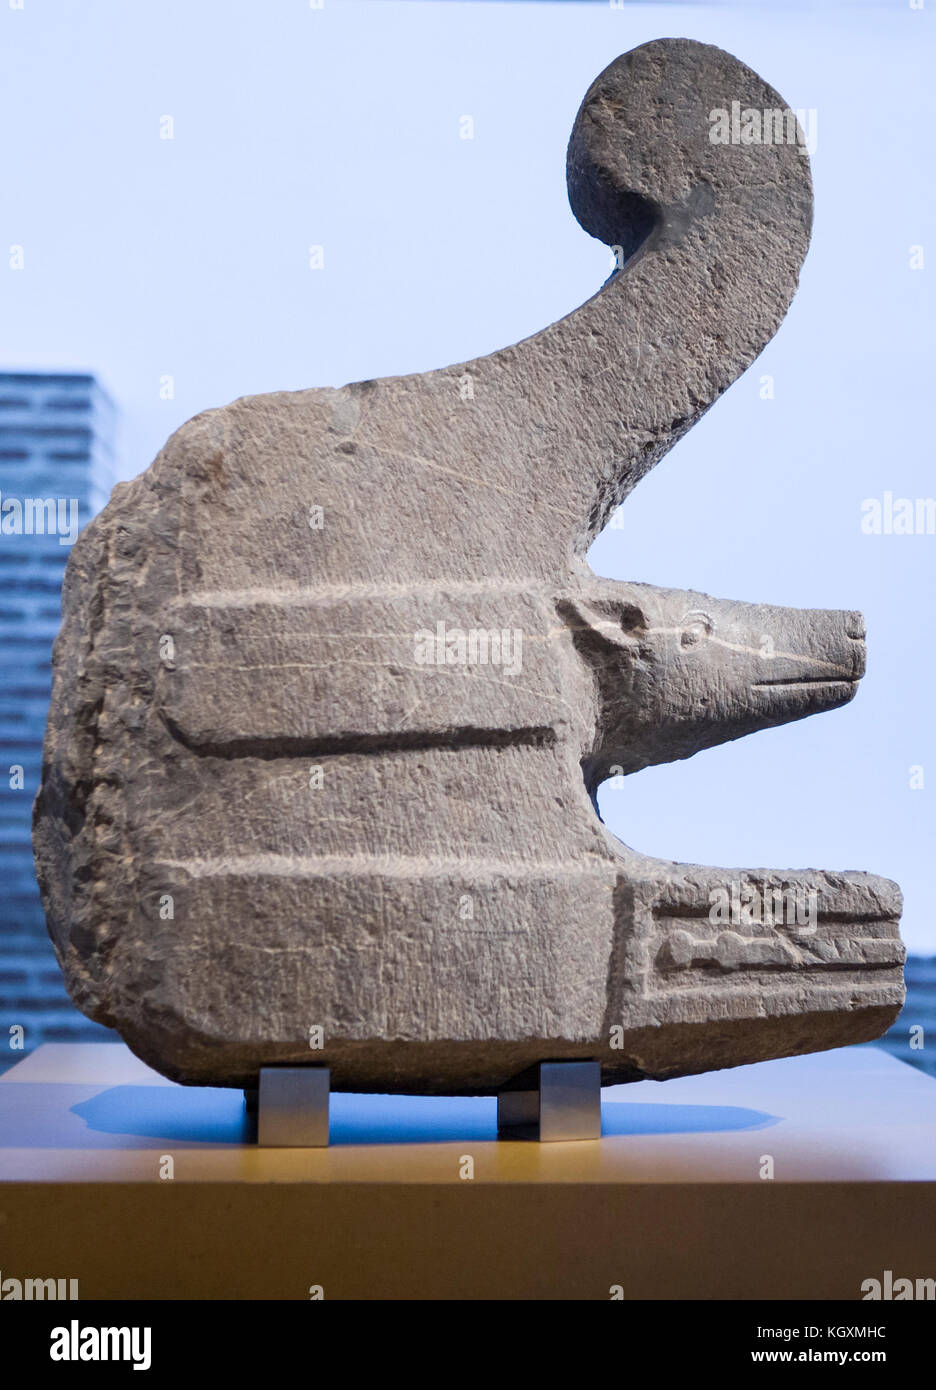 Cordoba, Spagna - 4 giugno 2011: Prua di pietra ritualistica romana al Museo Archeologico di Cordoba, Andalusia, Spagna Foto Stock